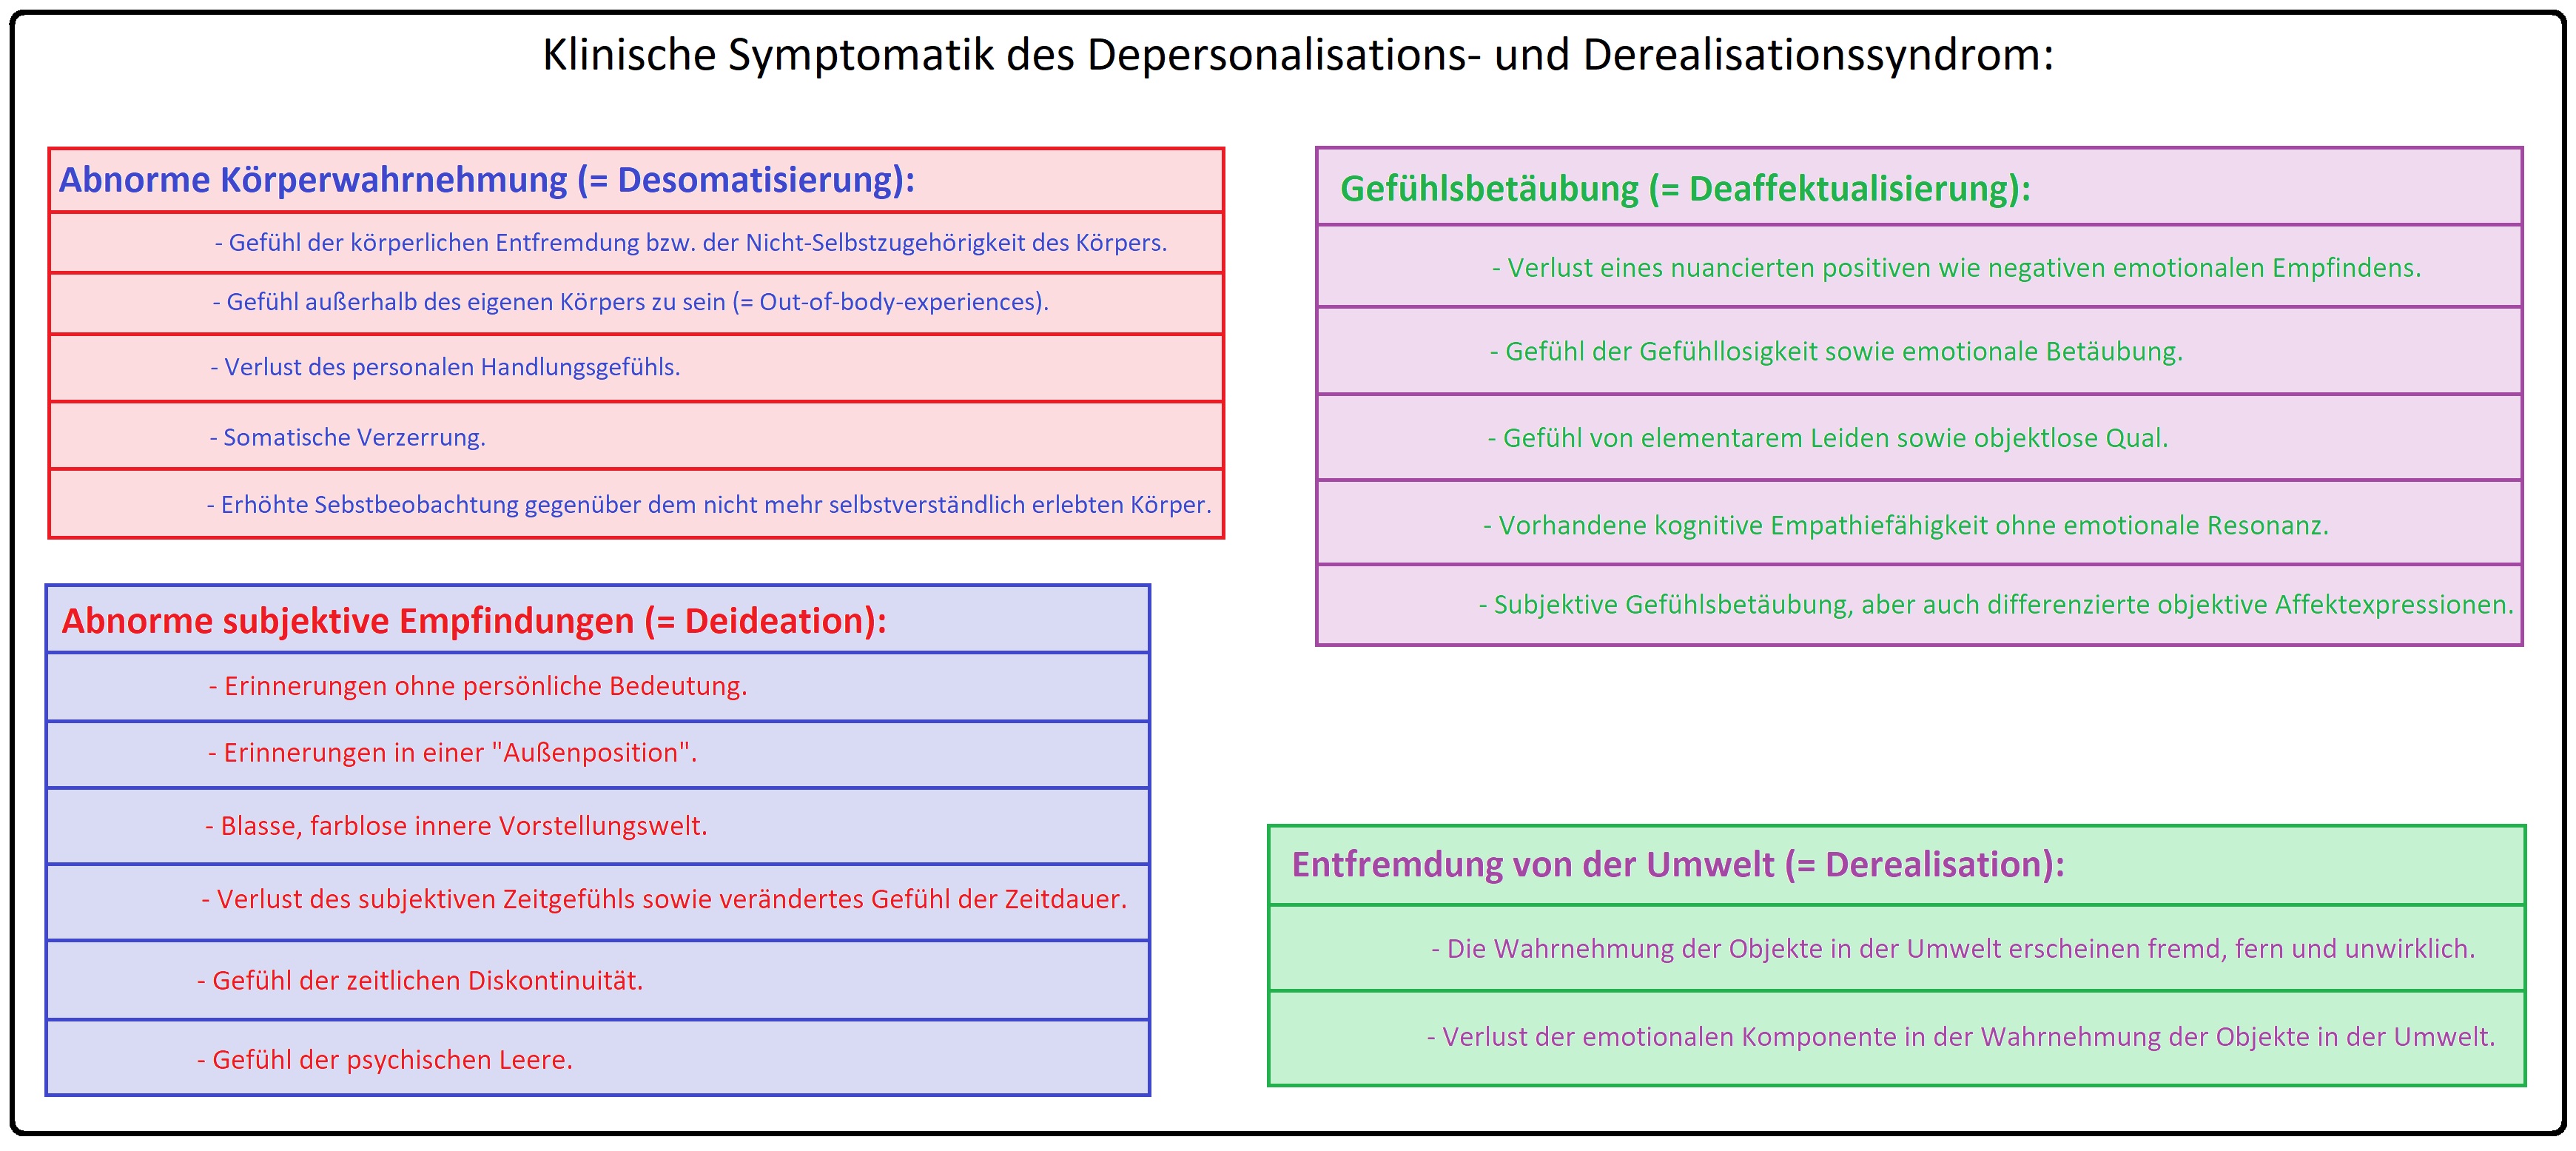 466 Klinische Symptomatik des Depersonalisations  und Derealisationssyndrom